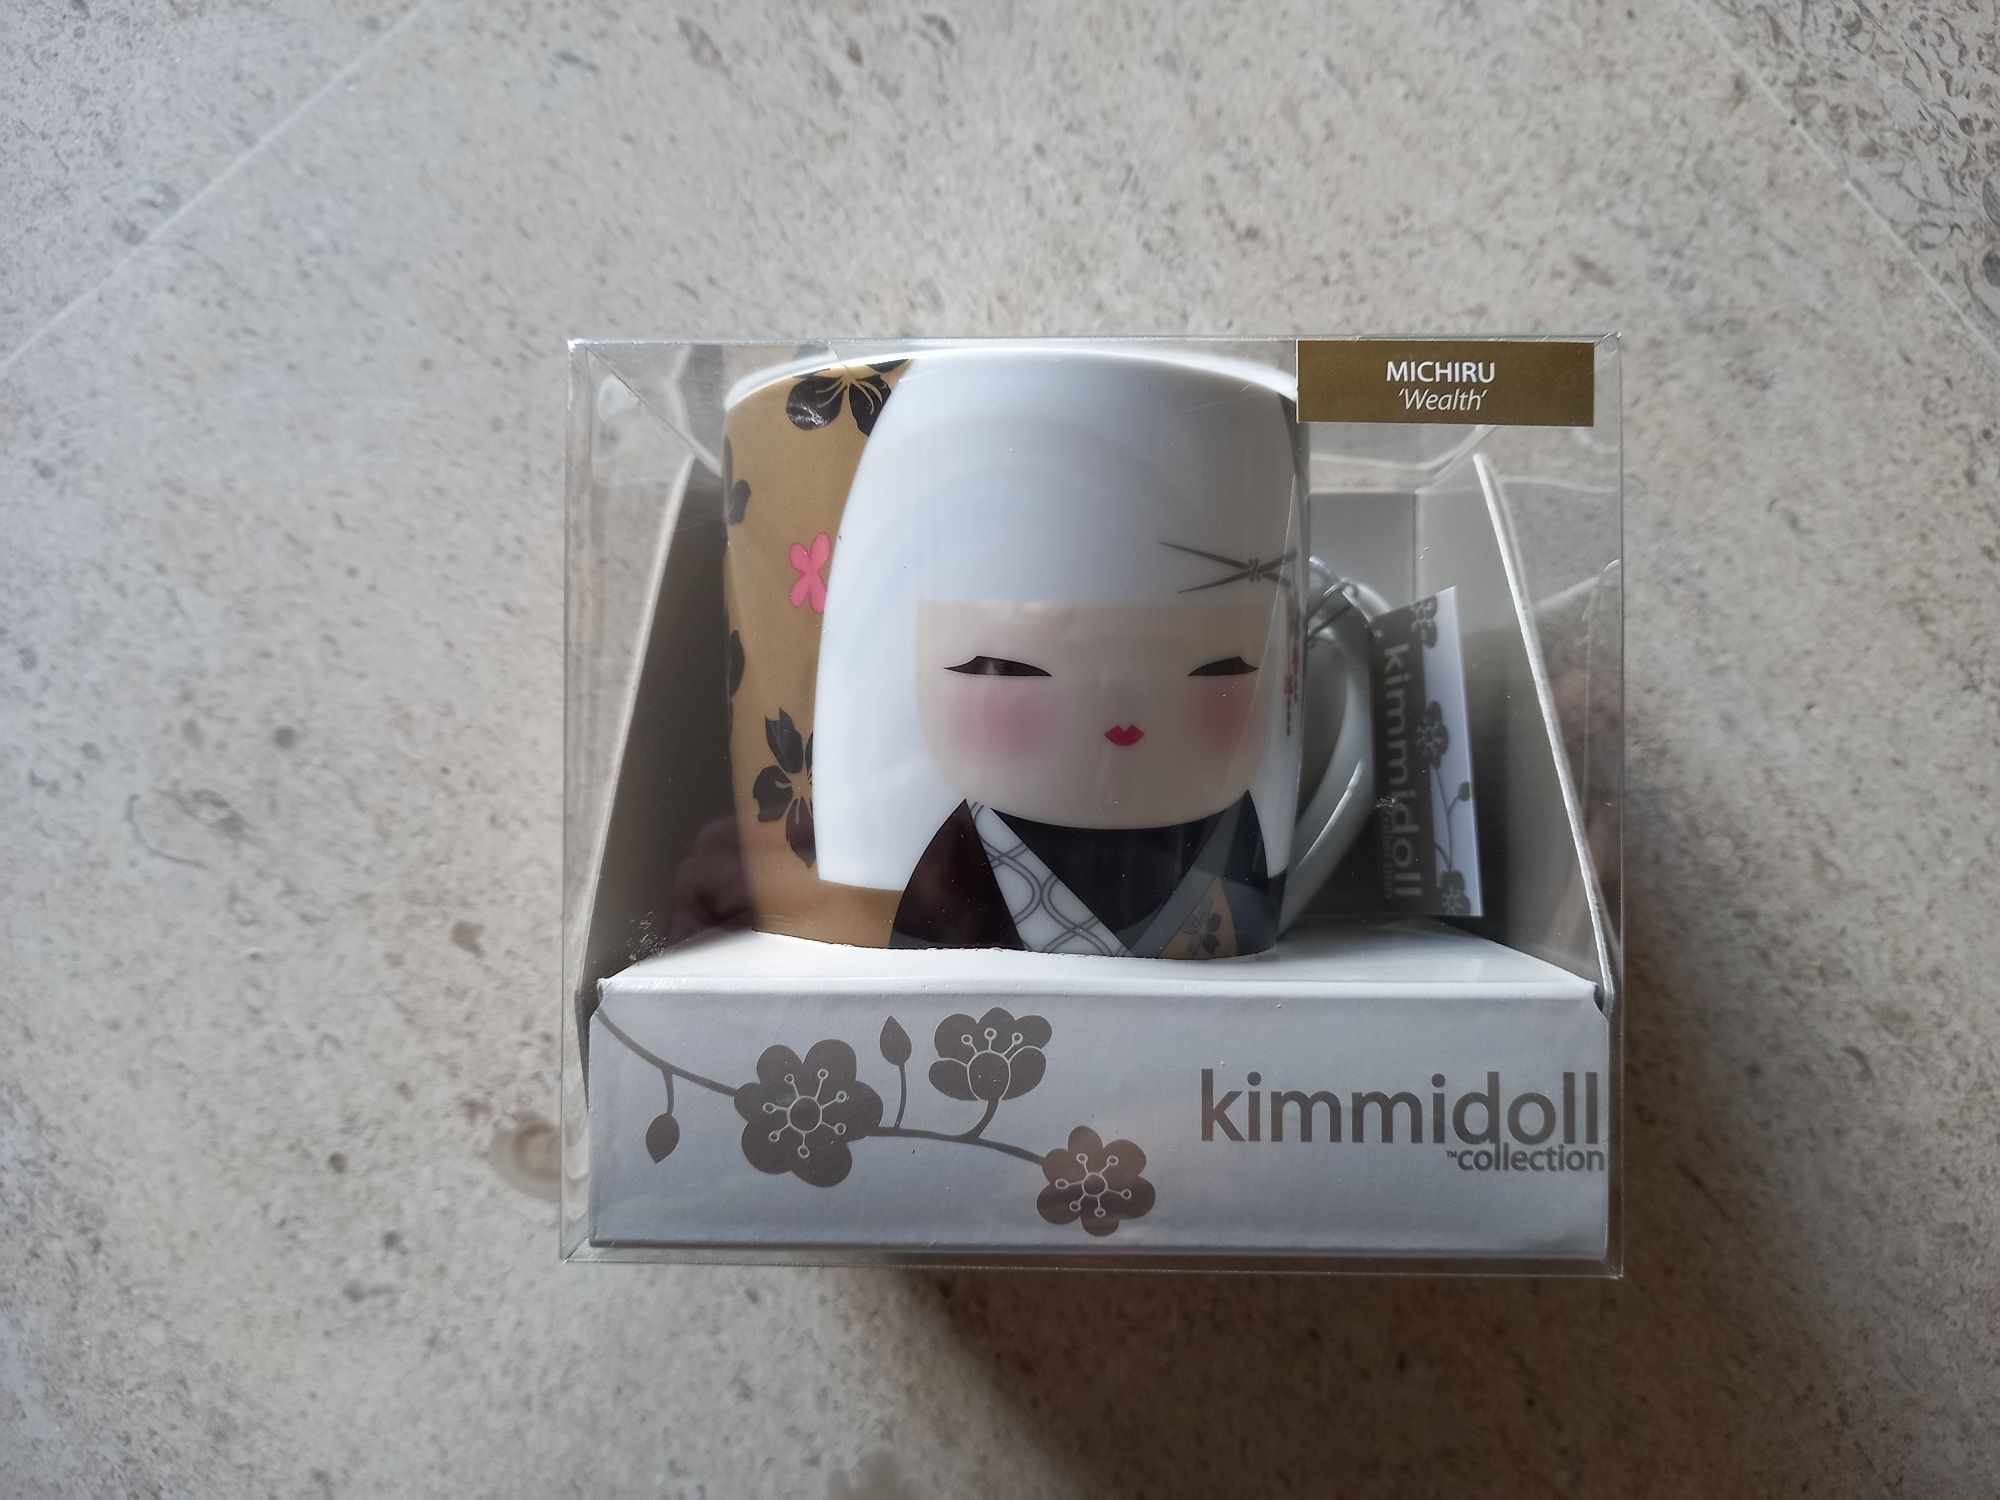 Kimmidoll Michiru (riqueza) em caixa fechada